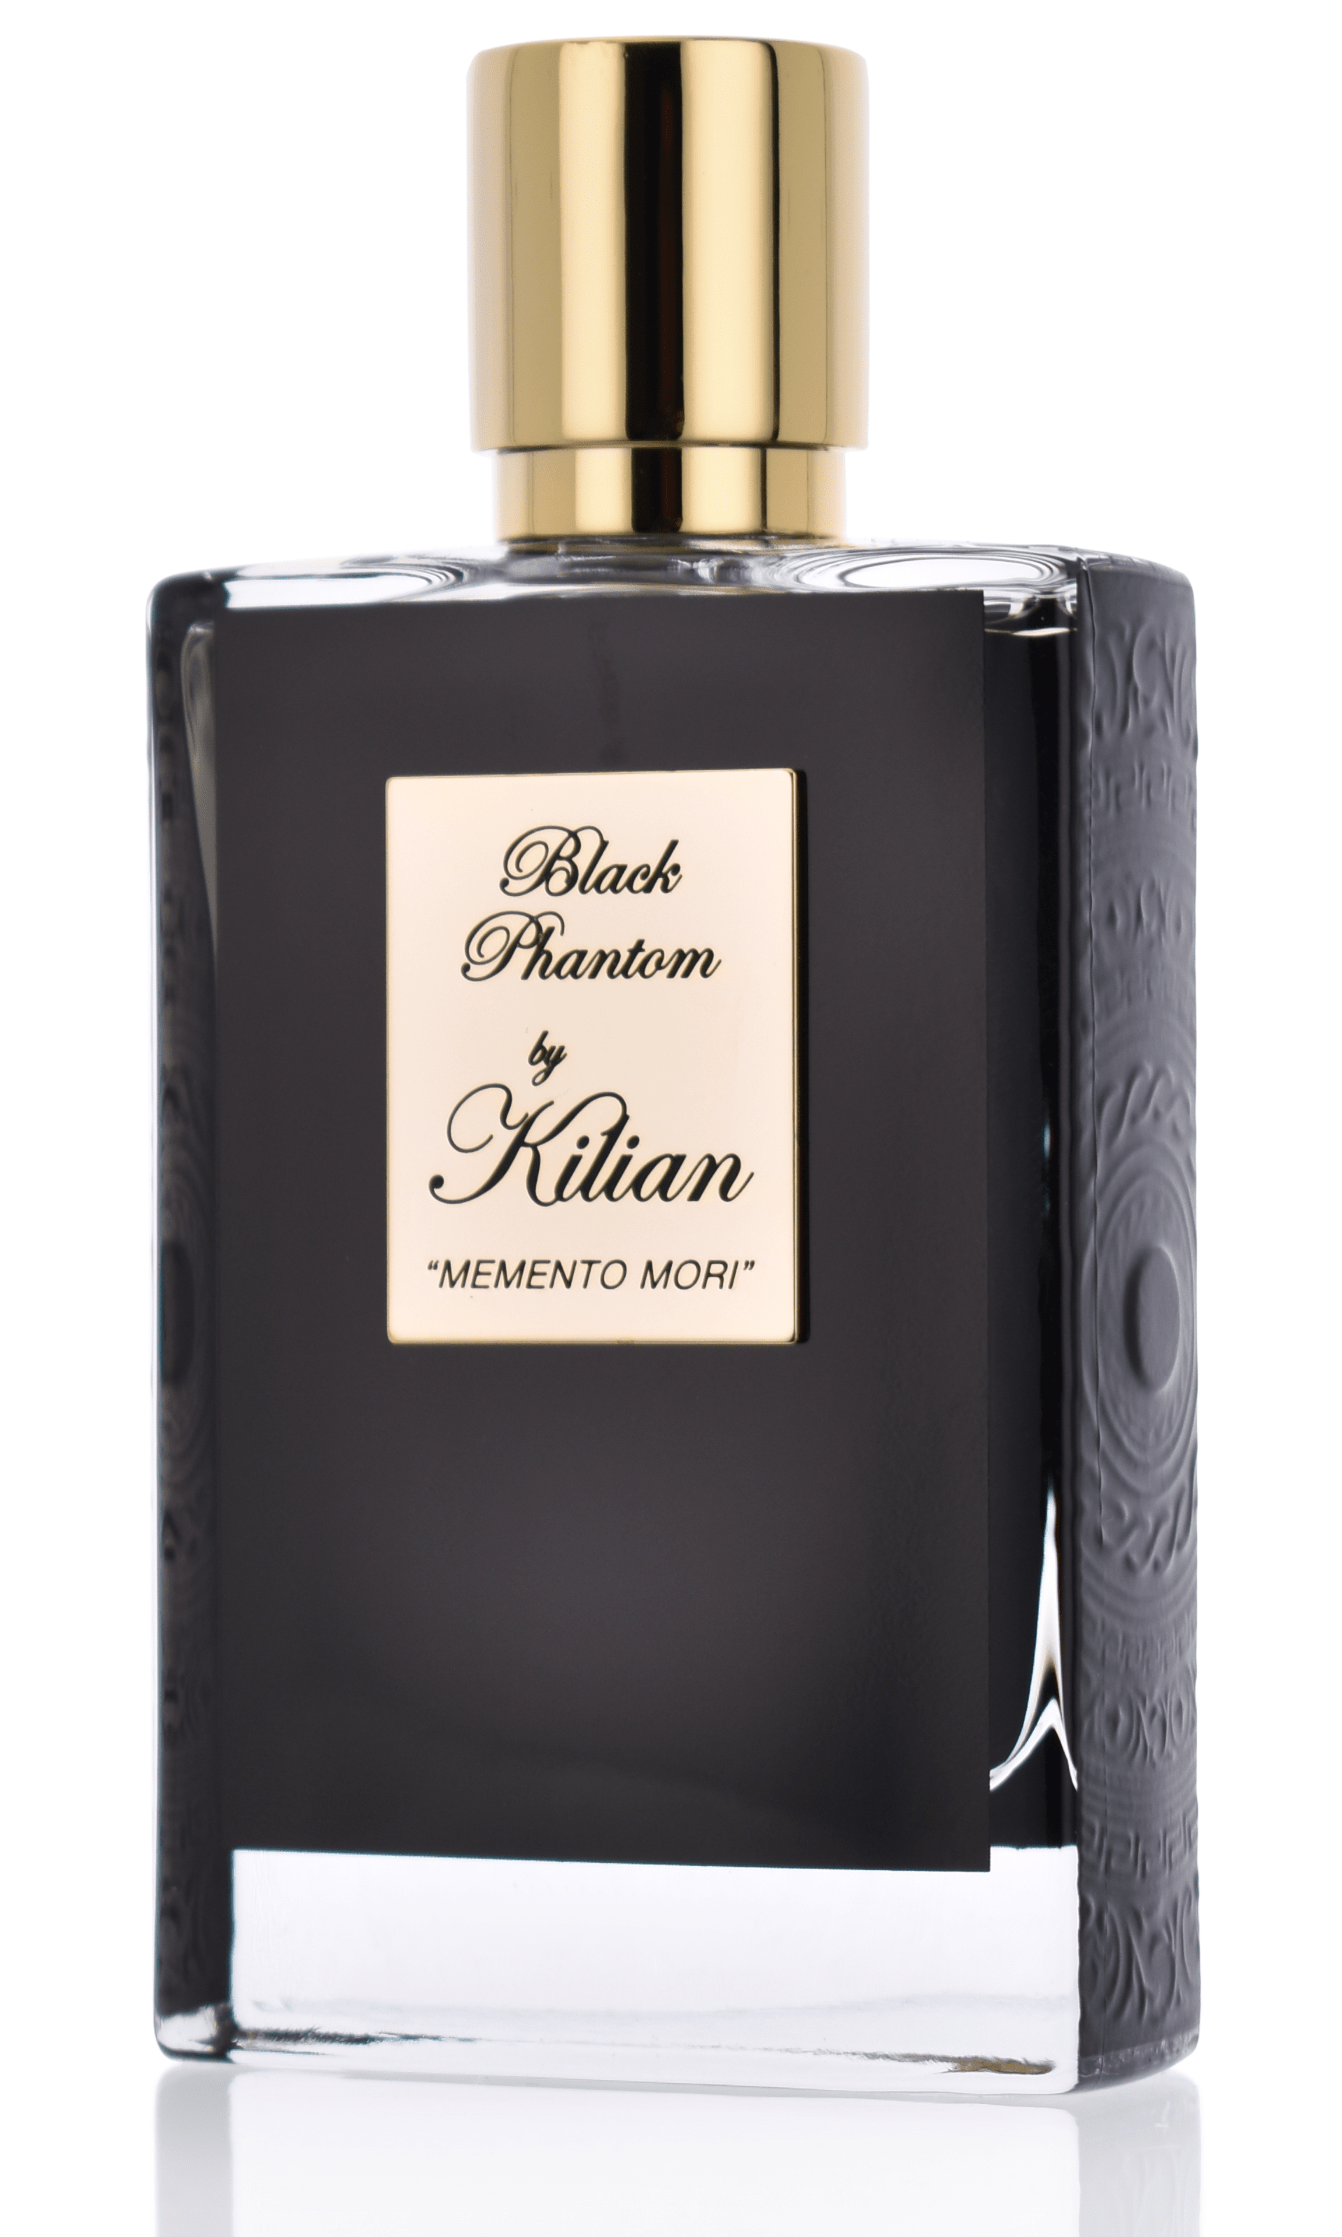 Kilian Black Phantom Memento Mori 50 ml Eau de Parfum     